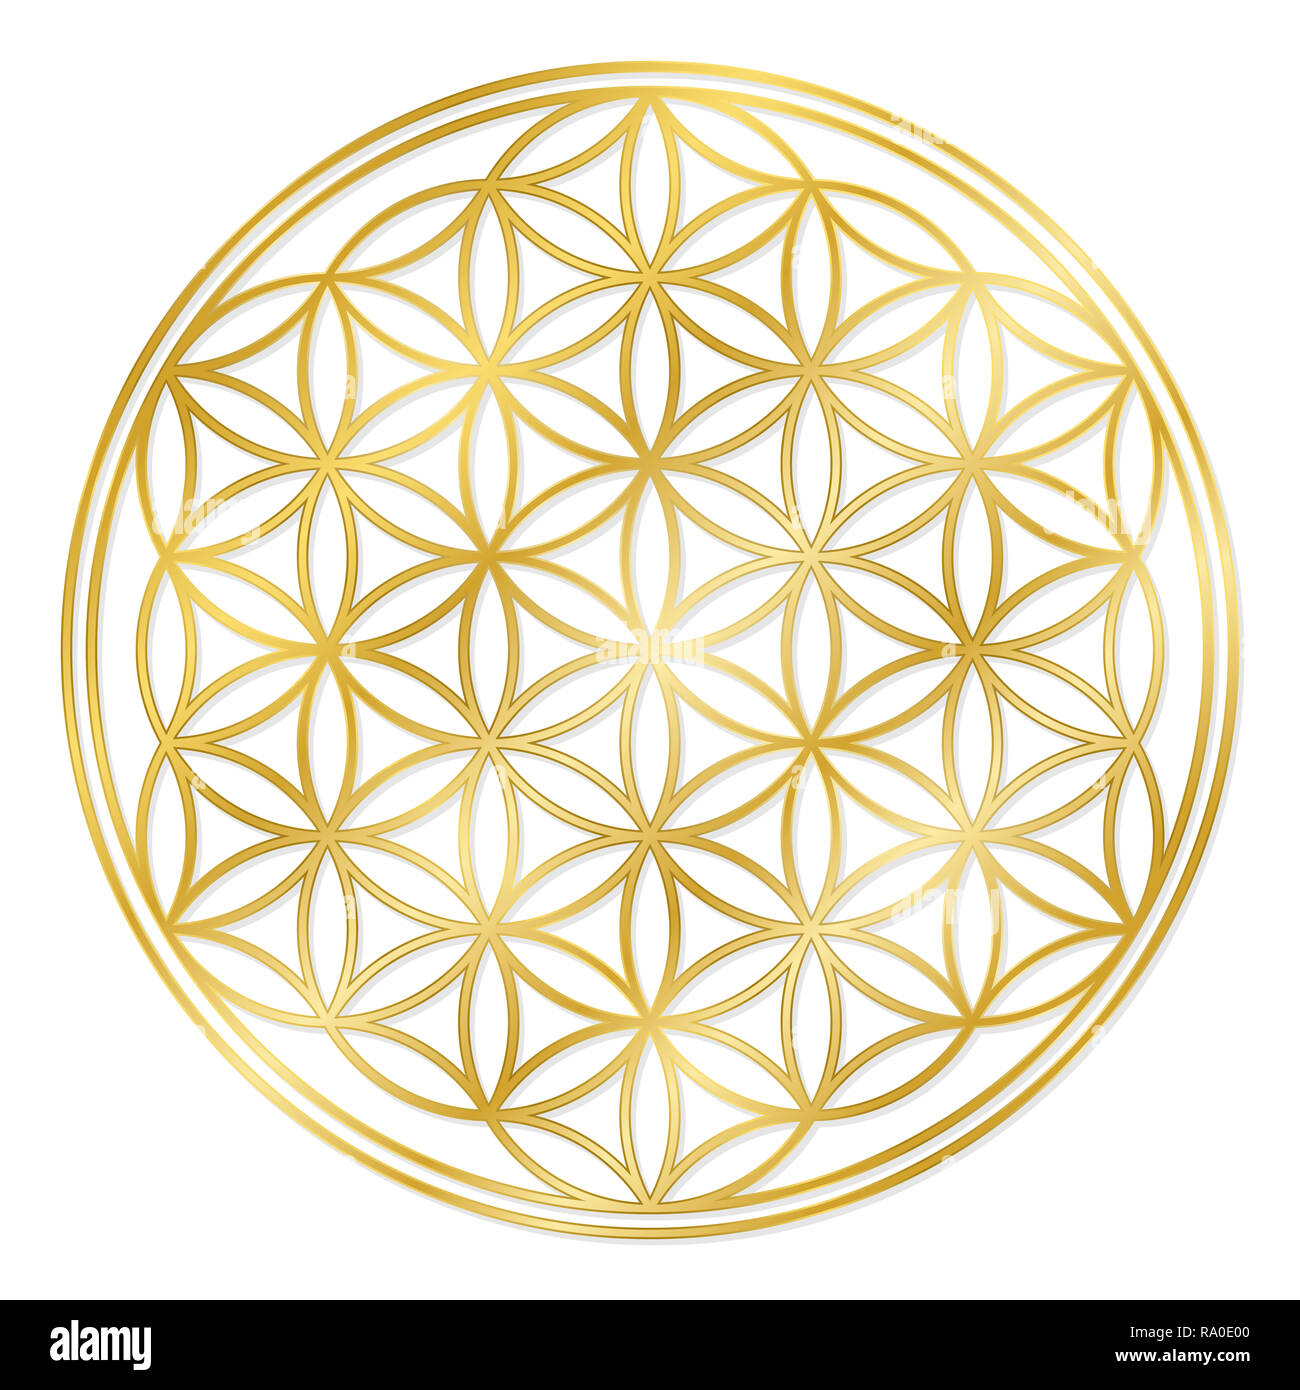 Goldene Blume des Lebens, zur Dekoration oder goldene Anhänger verwendet. Geometrische Symbol auf weißem Hintergrund. Stockfoto